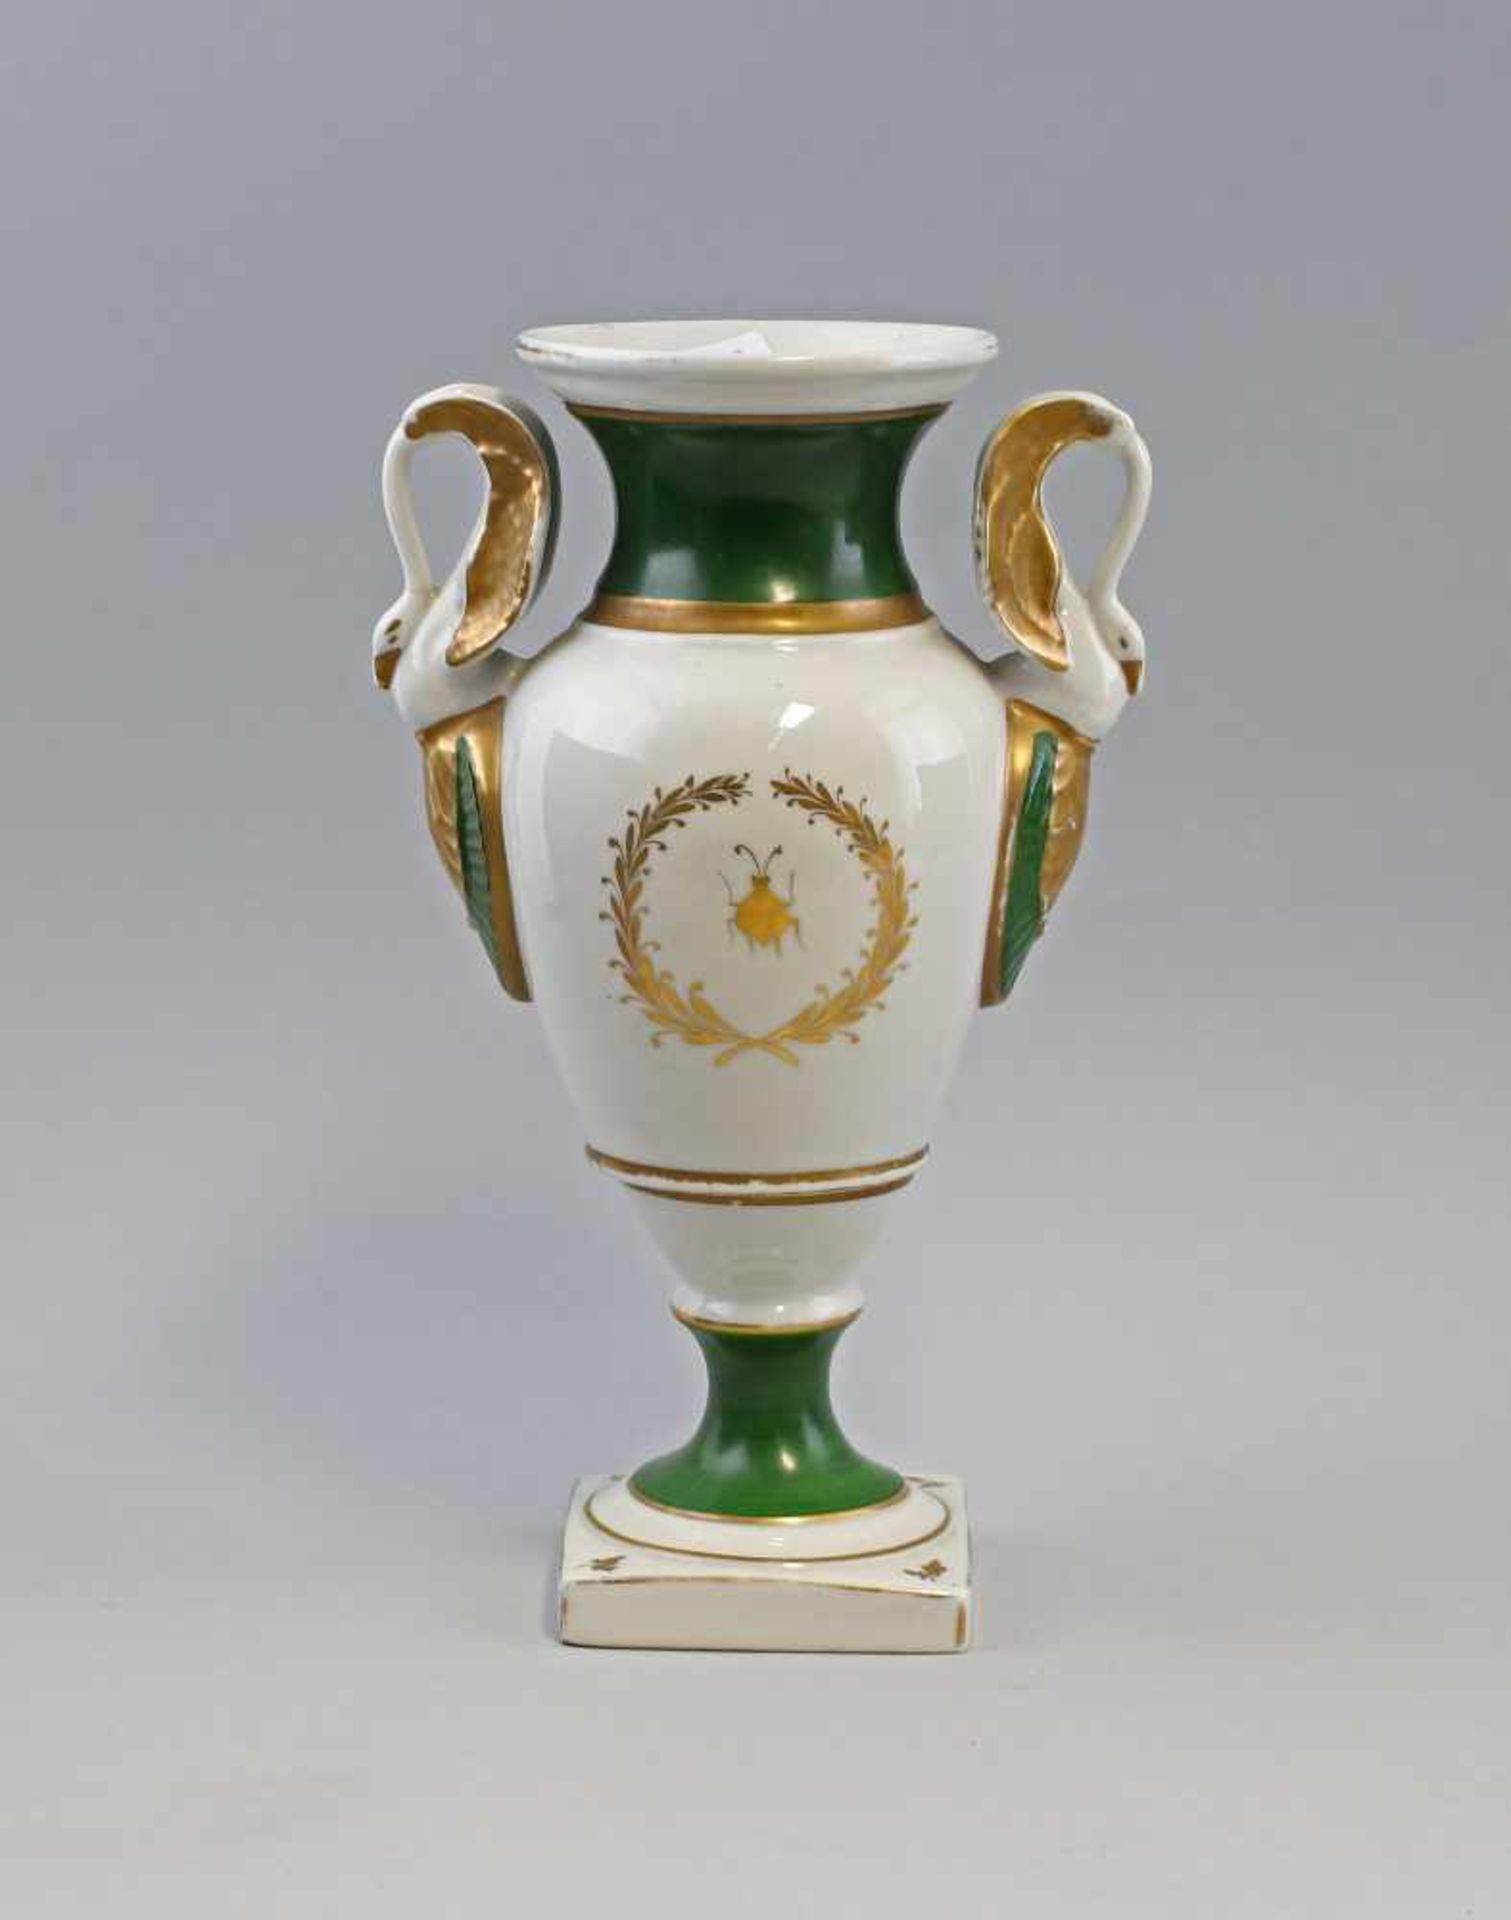 Amphorenvase Schwanenhenkel ungemarkt, wohl 19.Jh., amphorenförmige Vase auf quadratischem Fuß, - Bild 2 aus 2